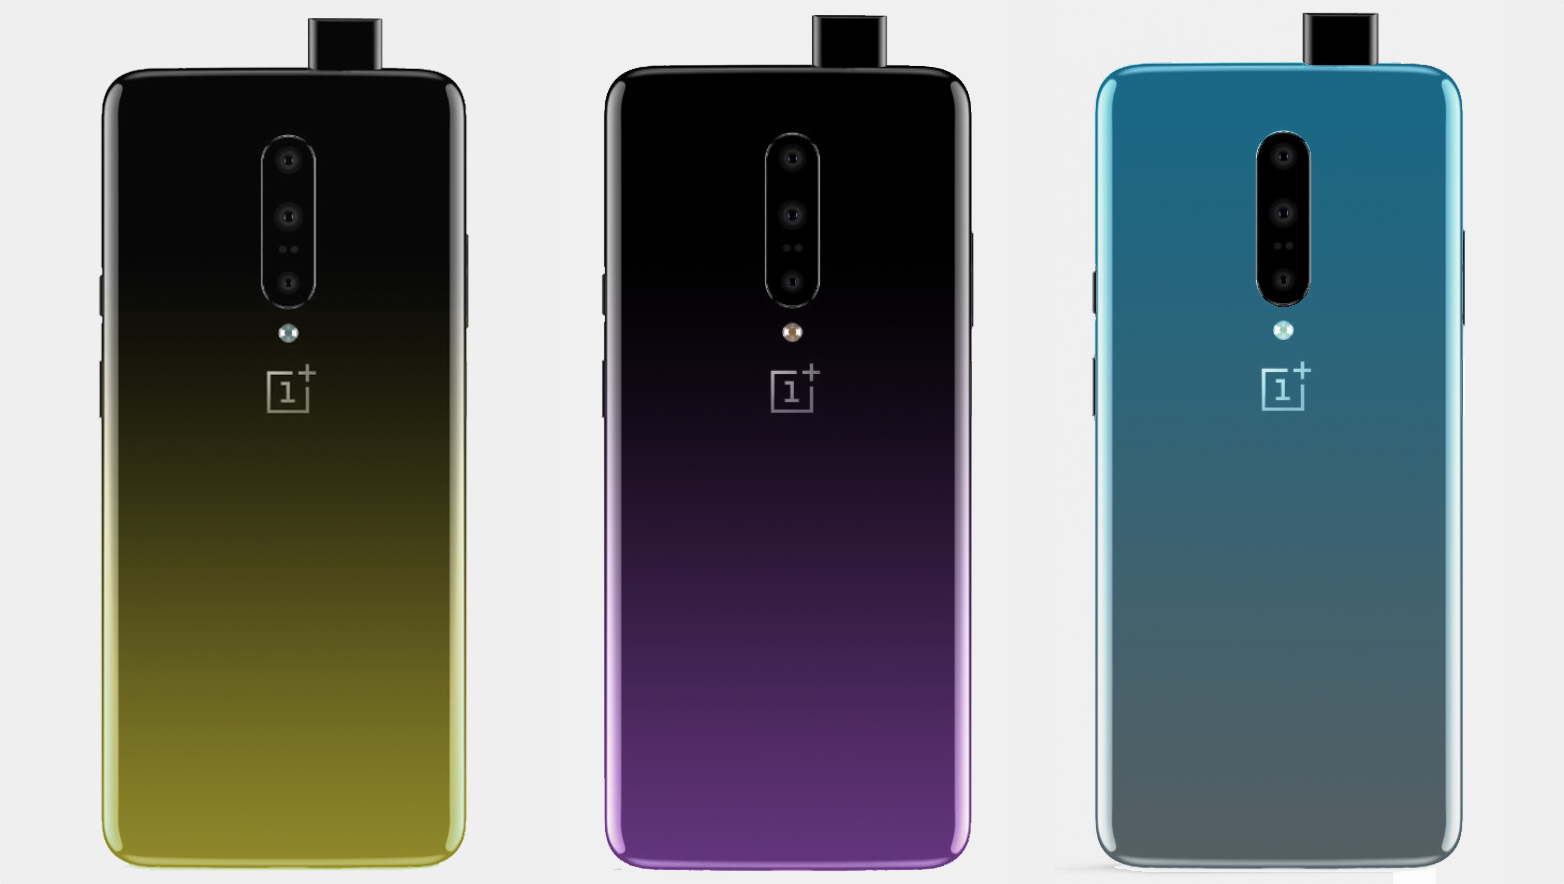 OnePlus 7'nin arka tasarımı ve degrade renk seçenekleri ortaya çıktı